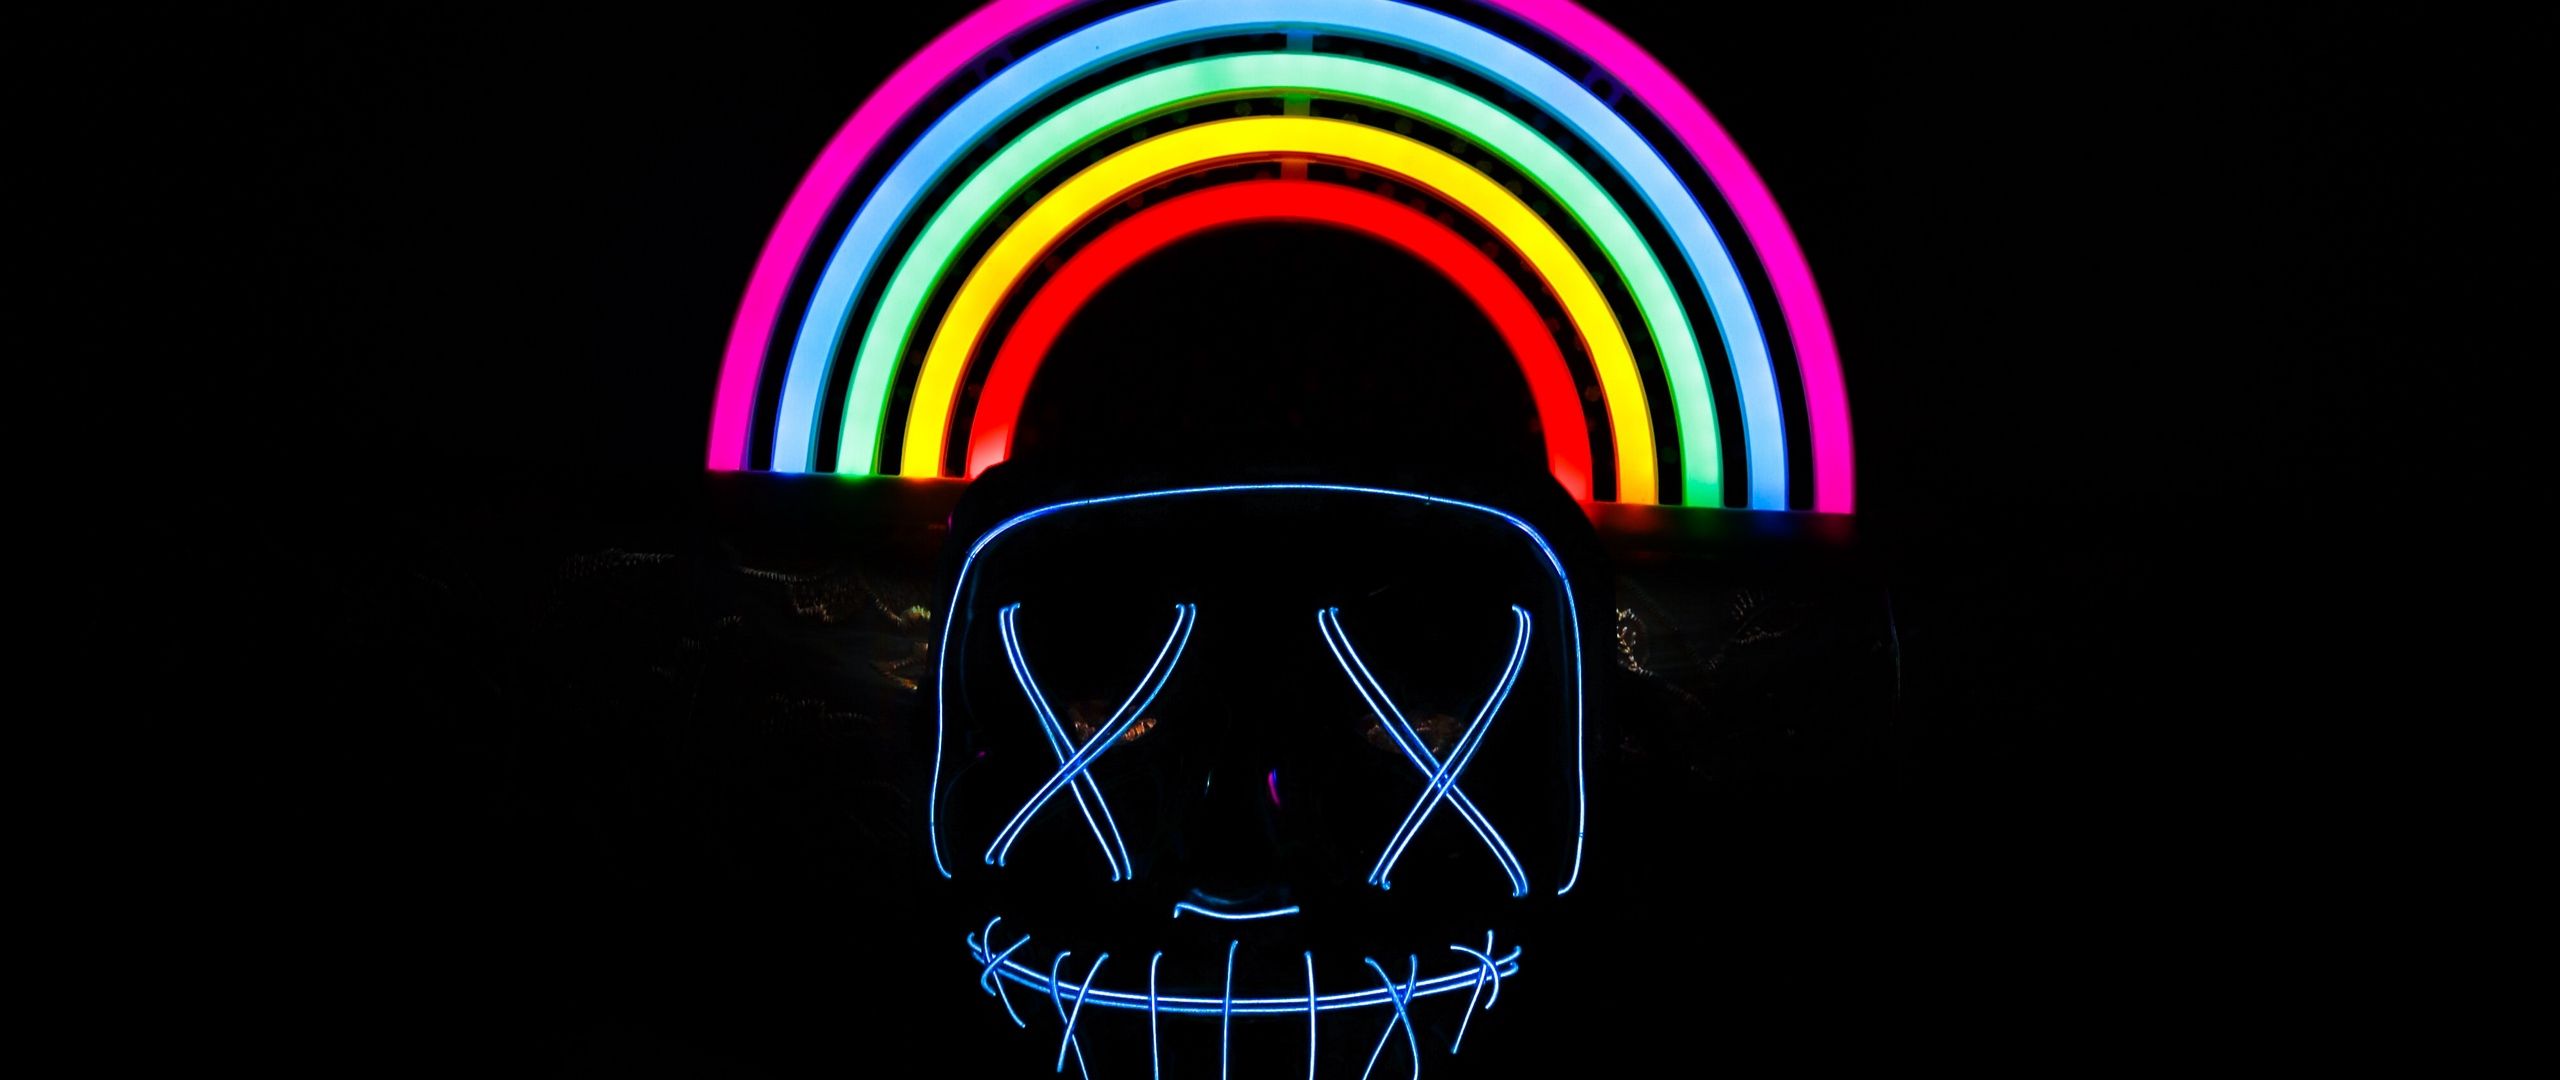 Neon Rainbows Desktop Wallpapers